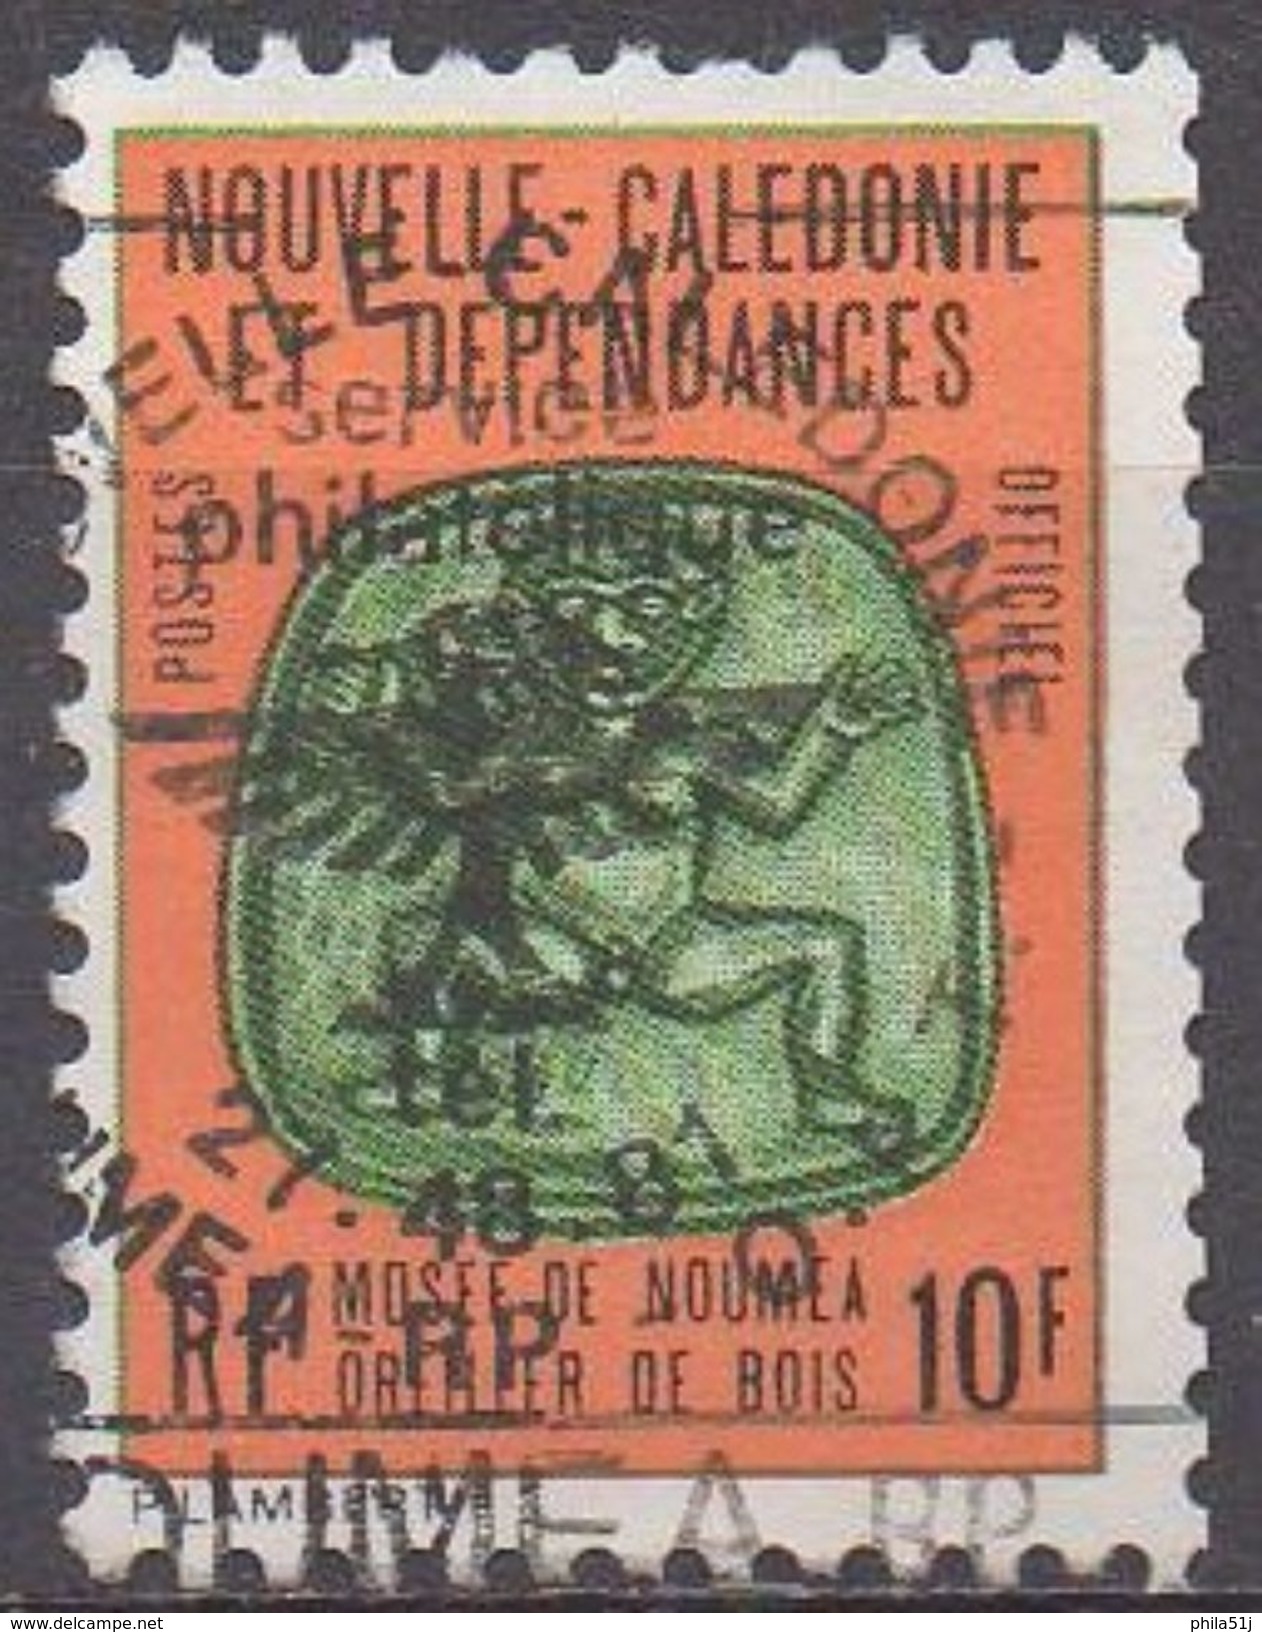 NOUVELLES-CALEDONIE  Service N°19__OBL VOIR SCAN - Dienstzegels